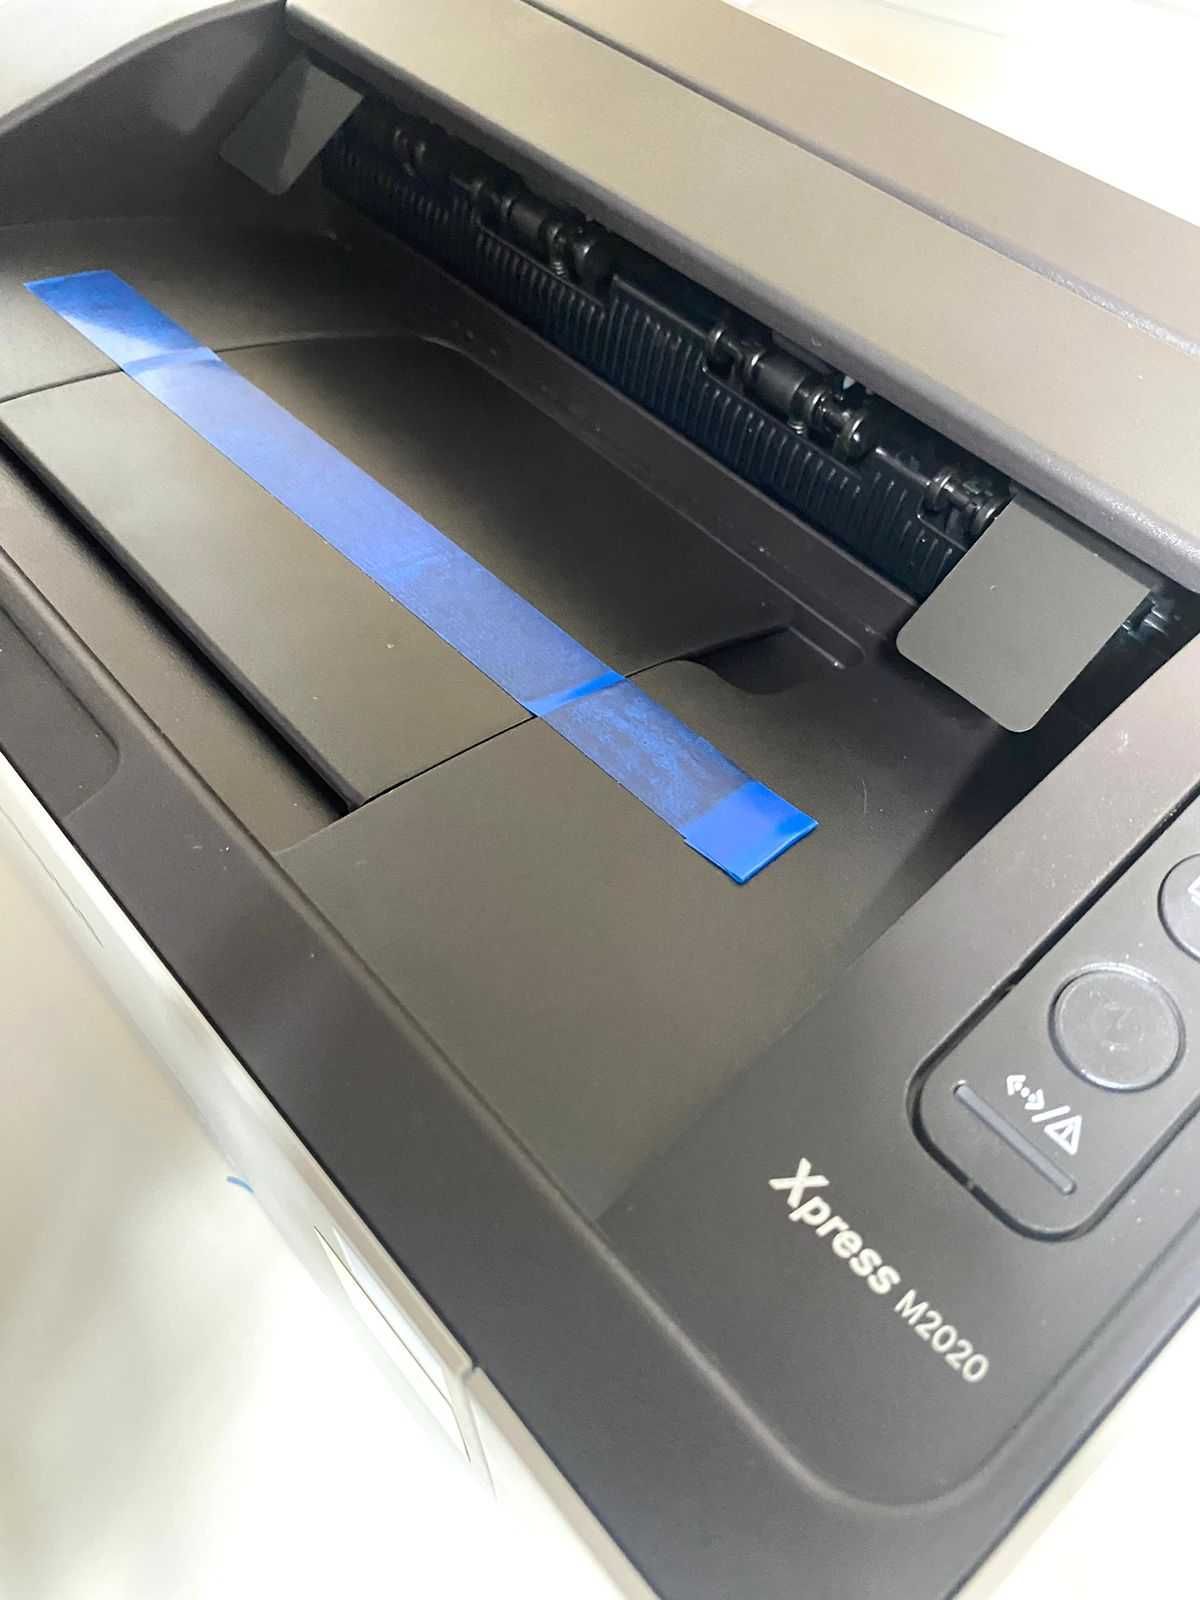 Принтер лазерный SAMSUNG XPRESS M 2020\ Рассрочка 0%\Ломбард Asia gold